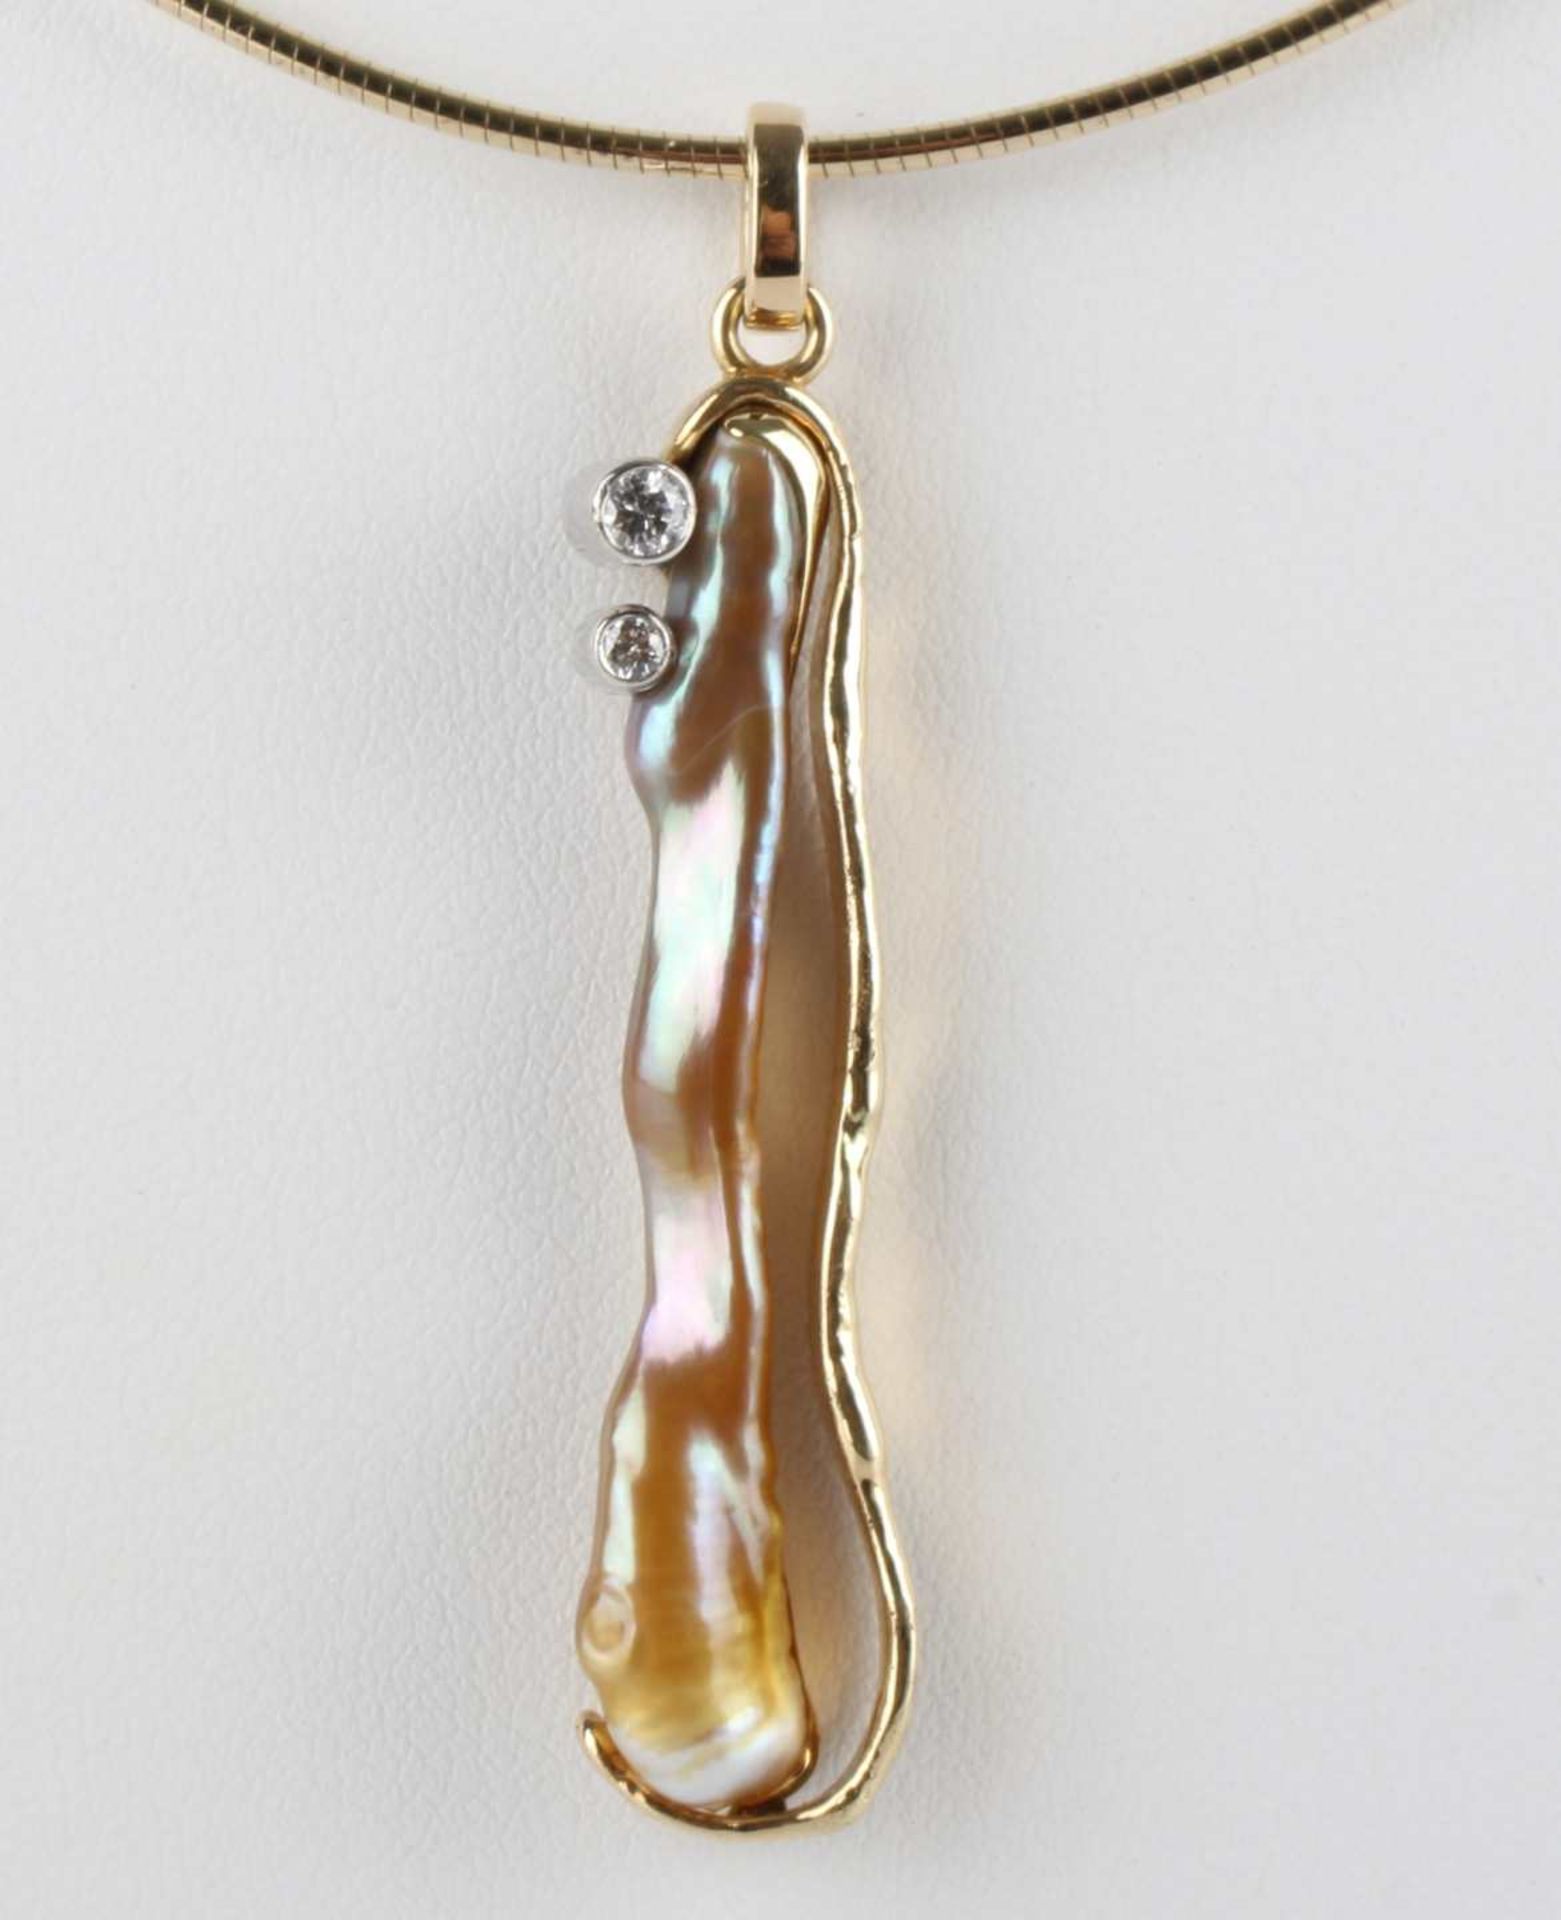 585 Gold Collier, Anhänger Biwa Perle mit zwei Brillanten 0,12 ct an Goldkette, gold necklace, - Image 2 of 5